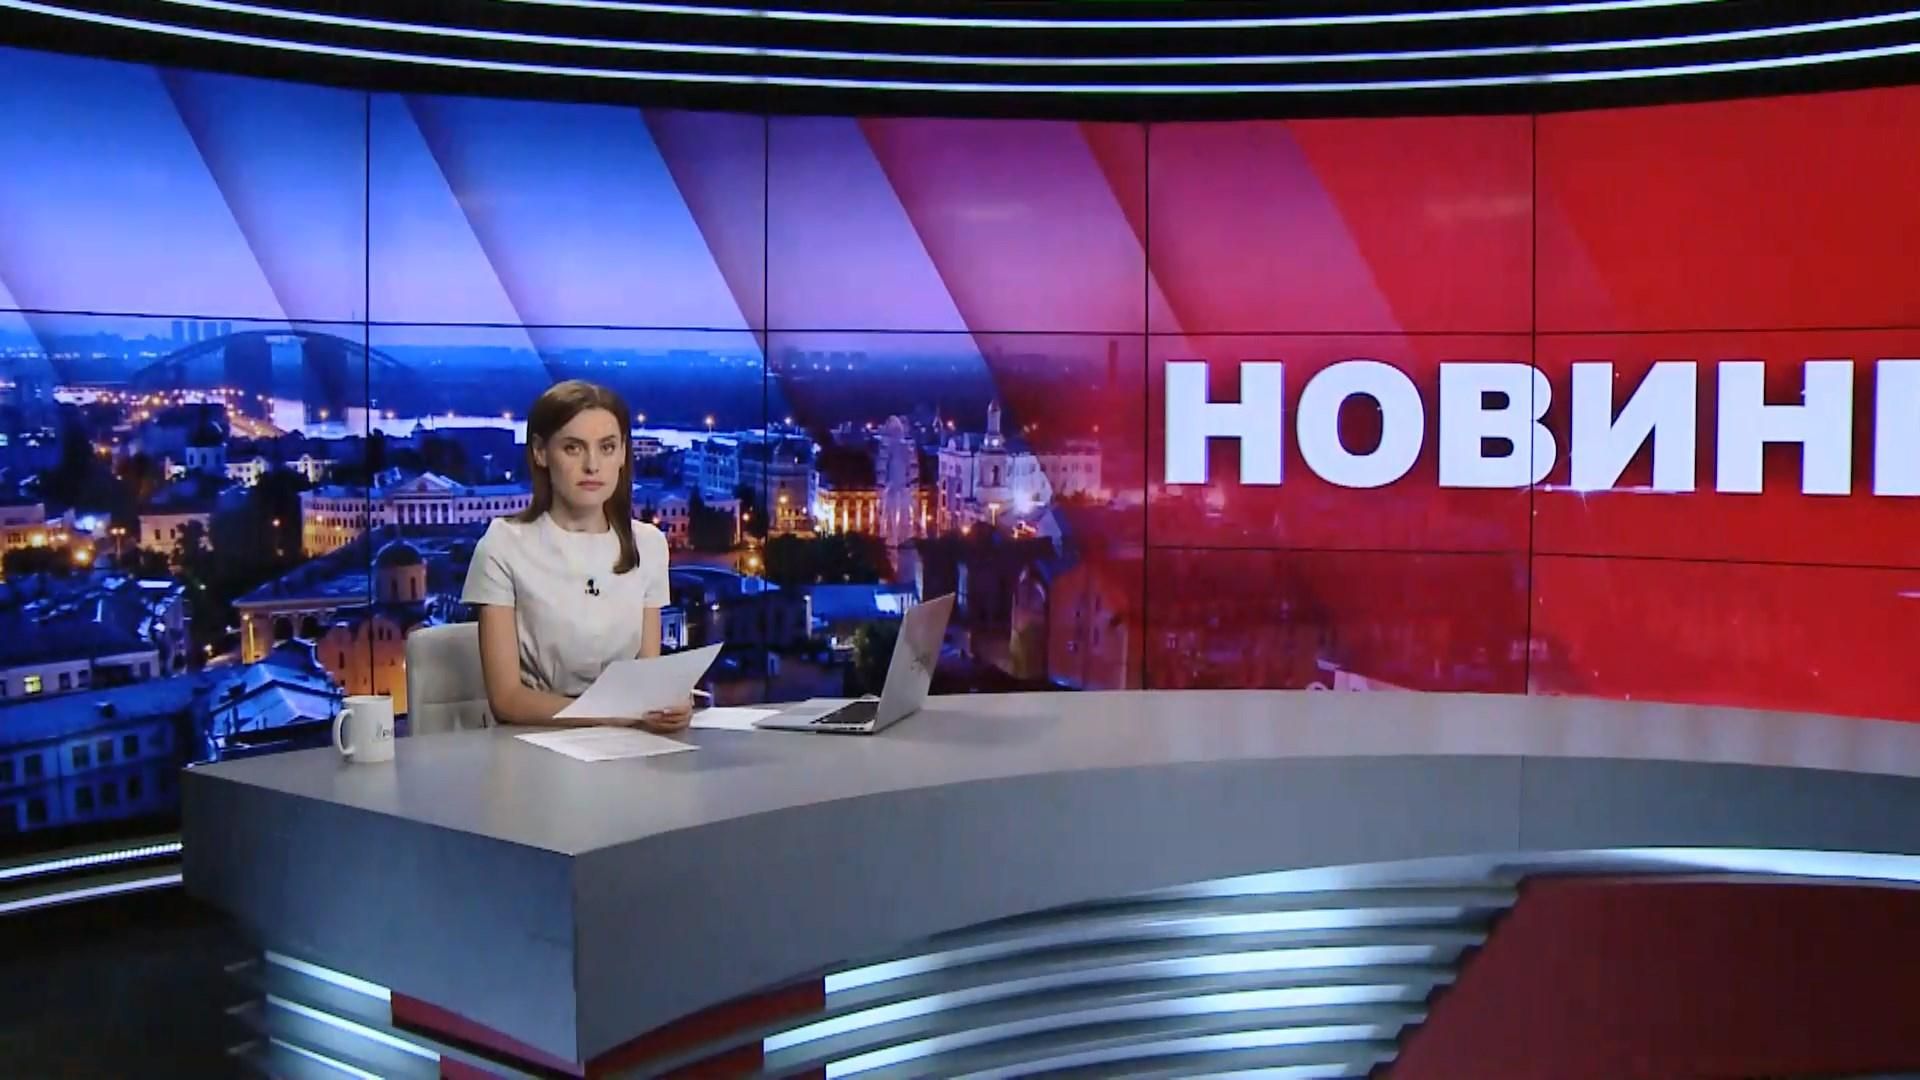 Итоговый выпуск новостей за 21:00:Отступление боевиков на Донбассе. Встреча Трампа и Ким Чен Ына